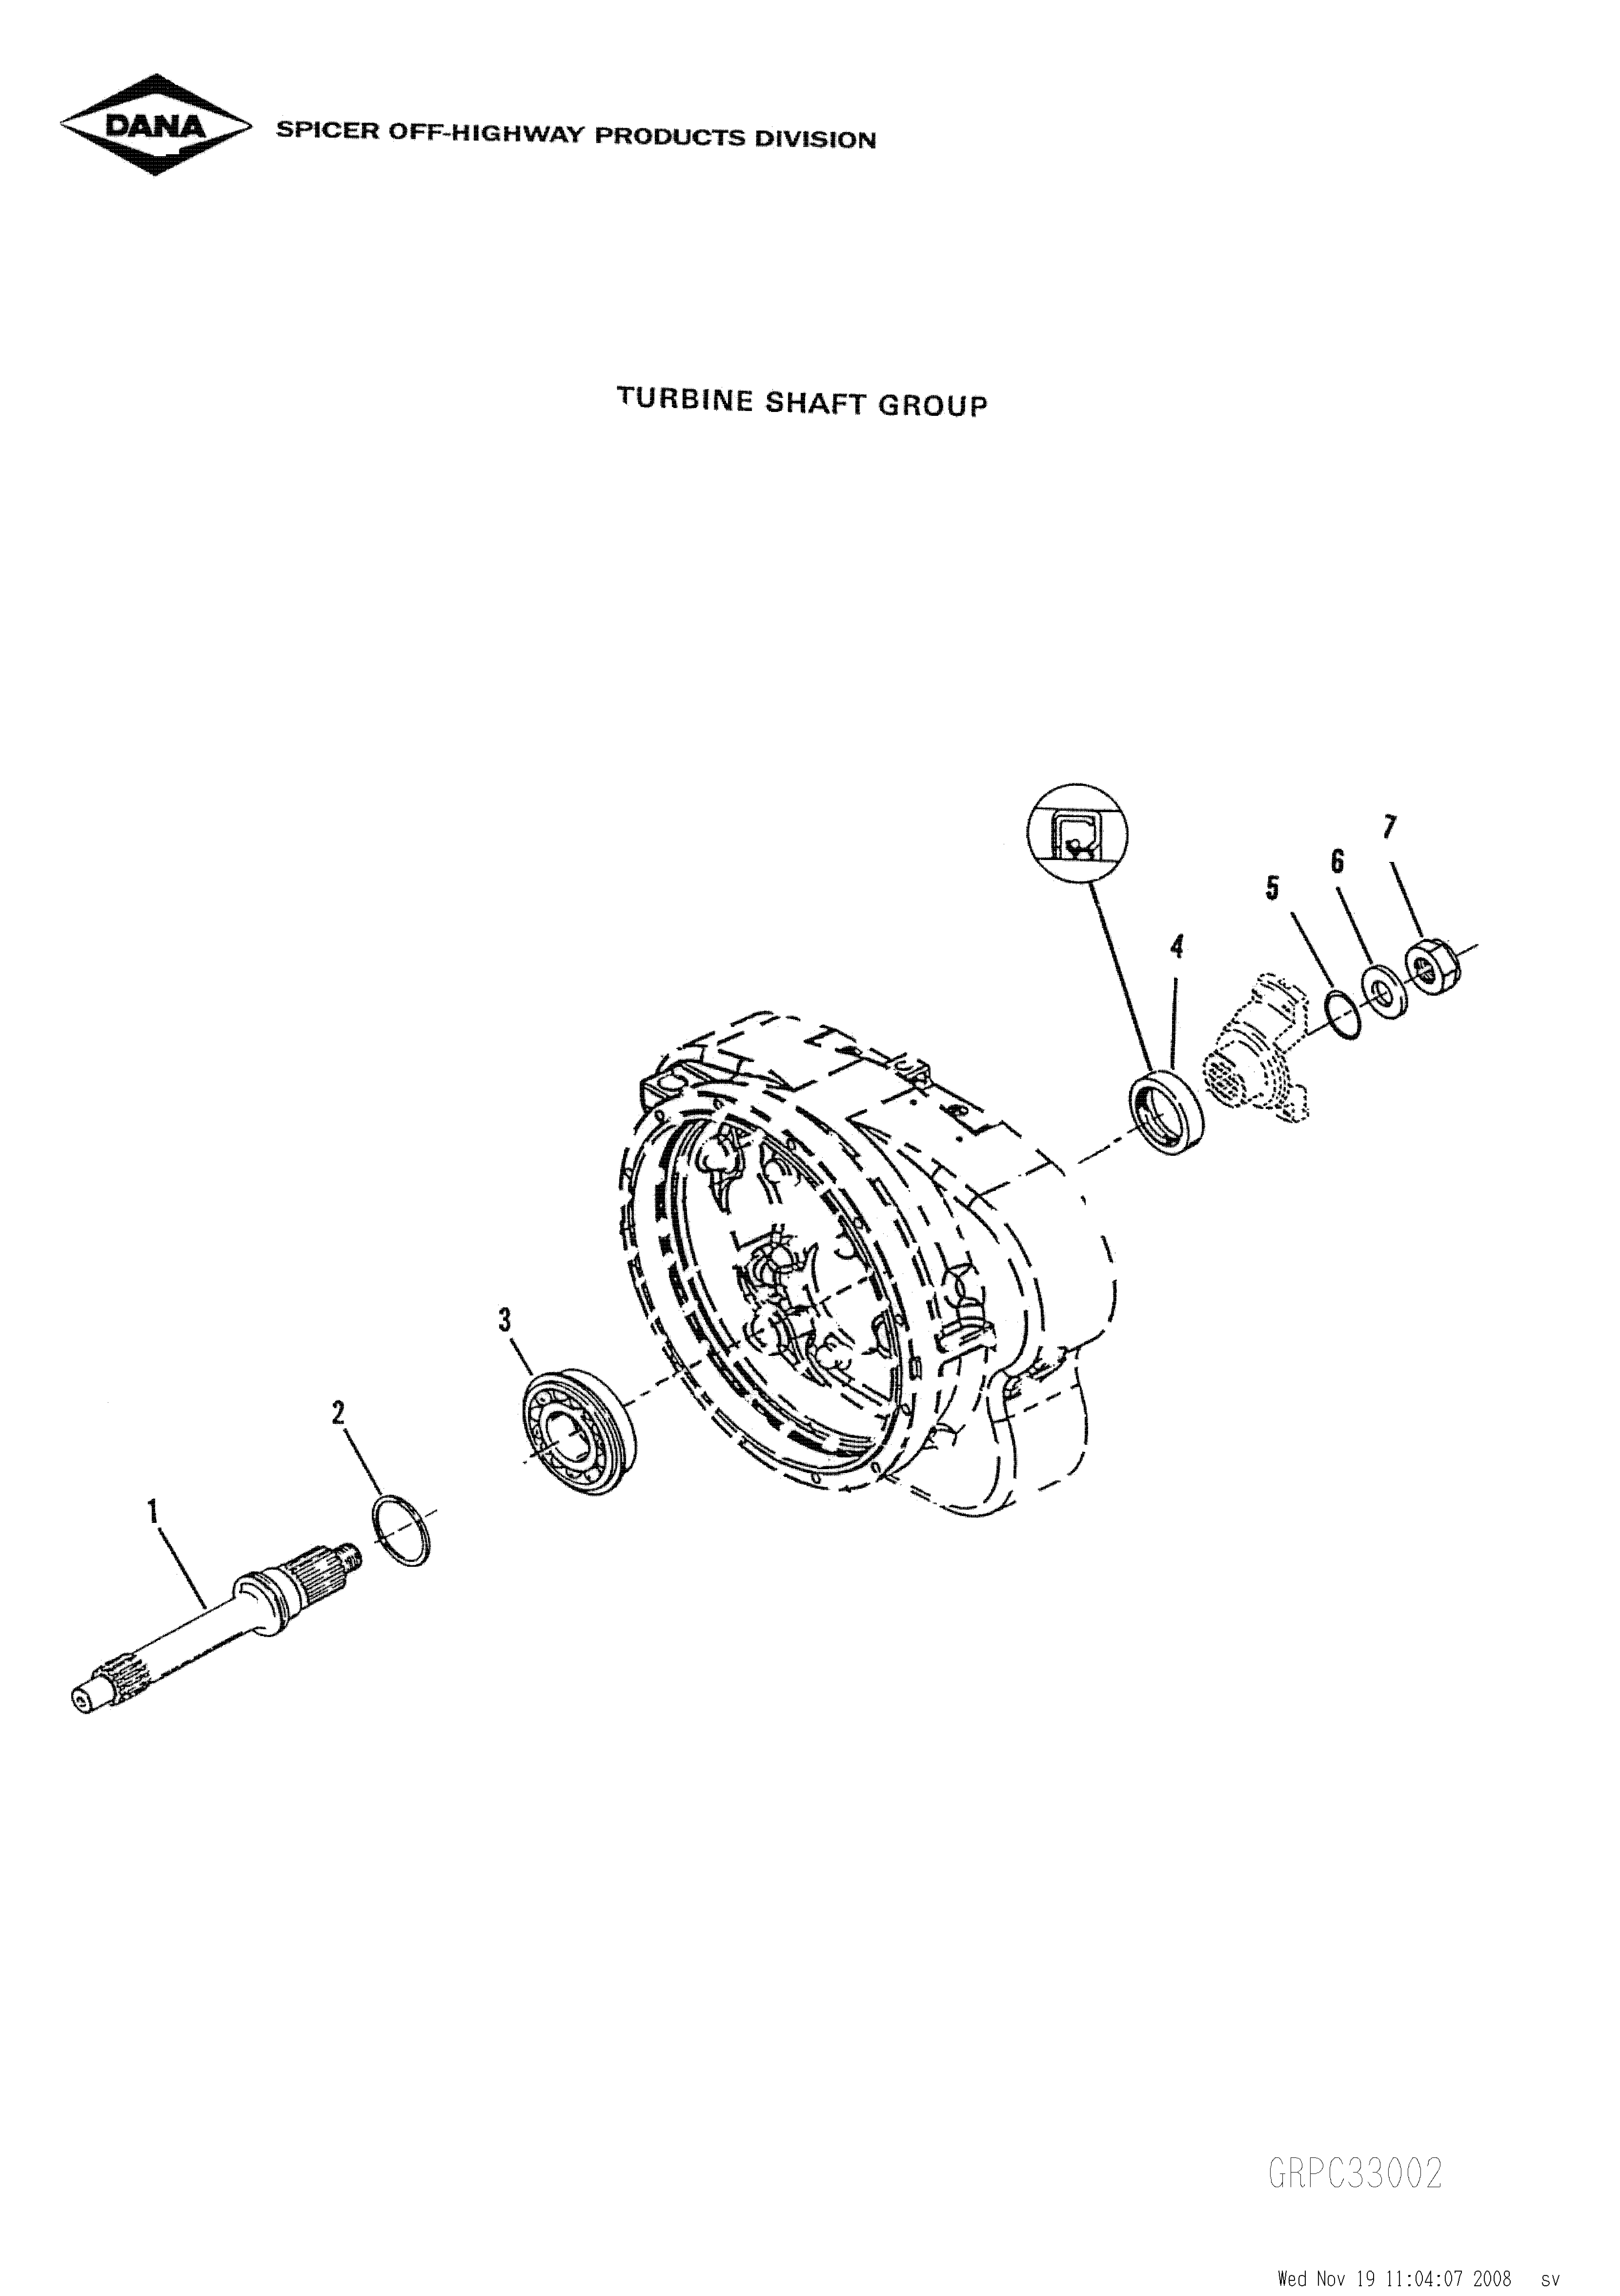 drawing for SCHOEMA, SCHOETTLER MASCHINENFABRIK K24.000102 - O-RING (figure 4)